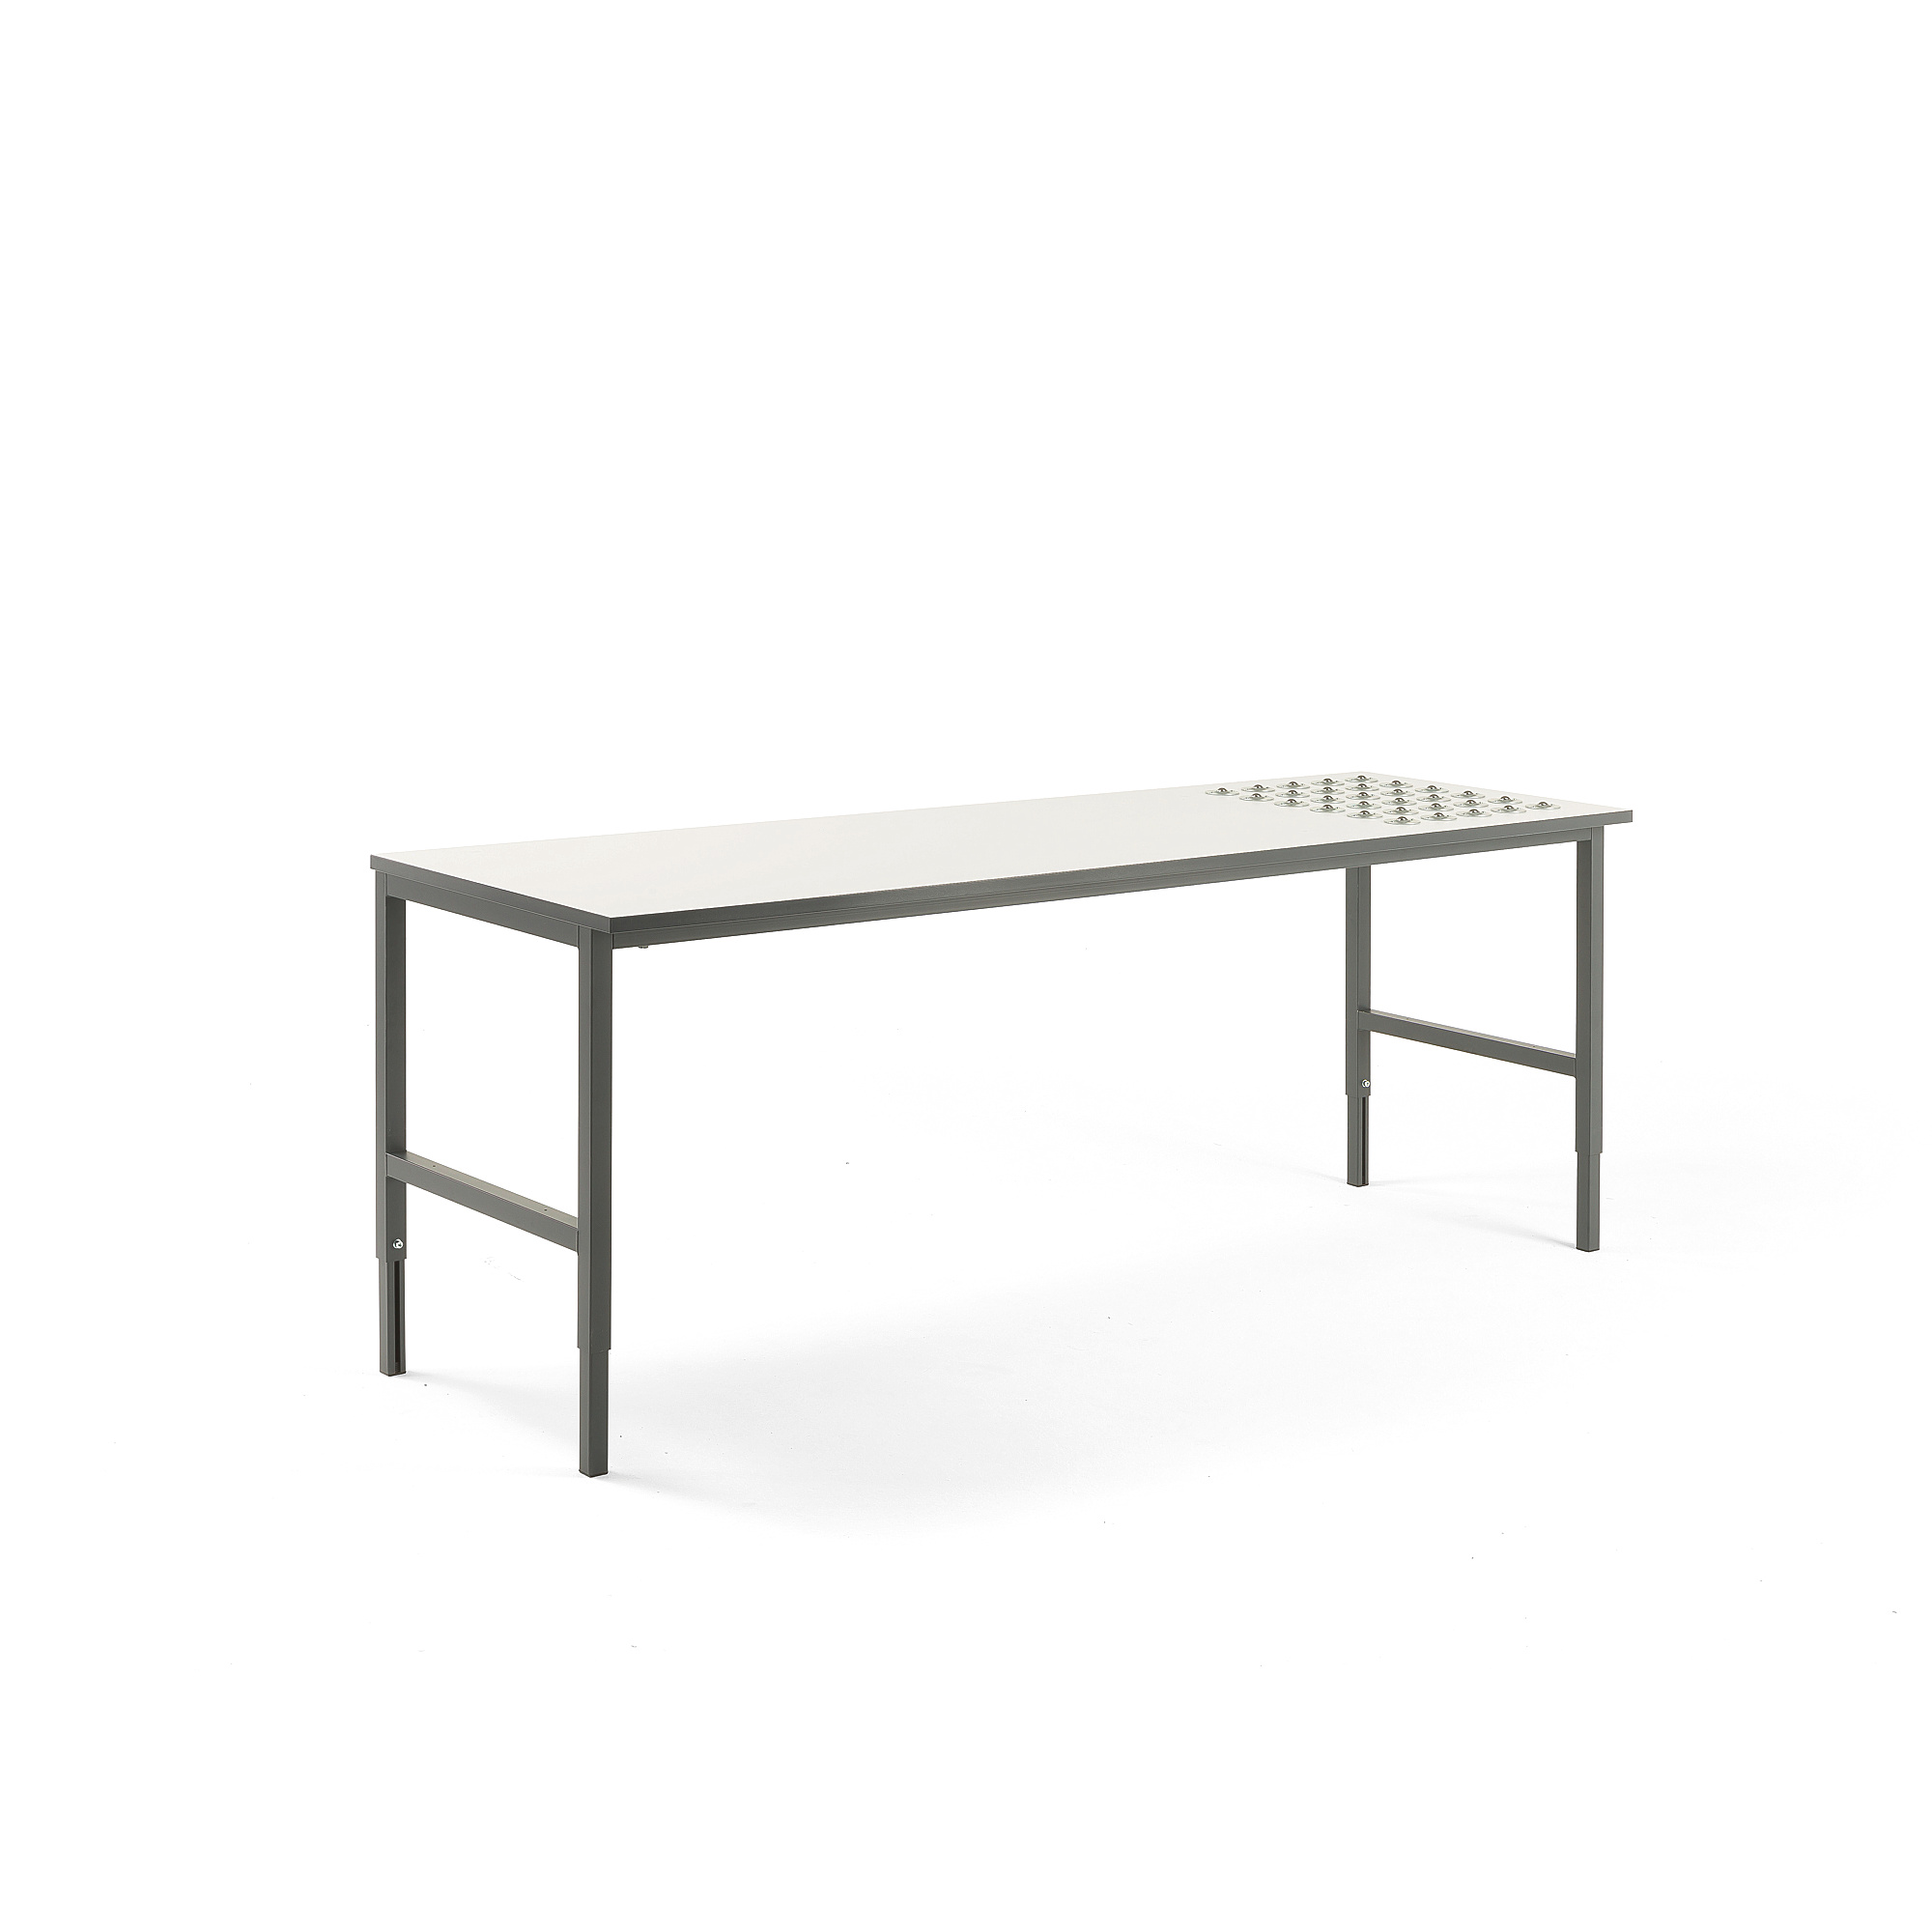 Pracovní stůl CARGO, s kuličkami, 2400x750 mm, bílá deska, šedý rám